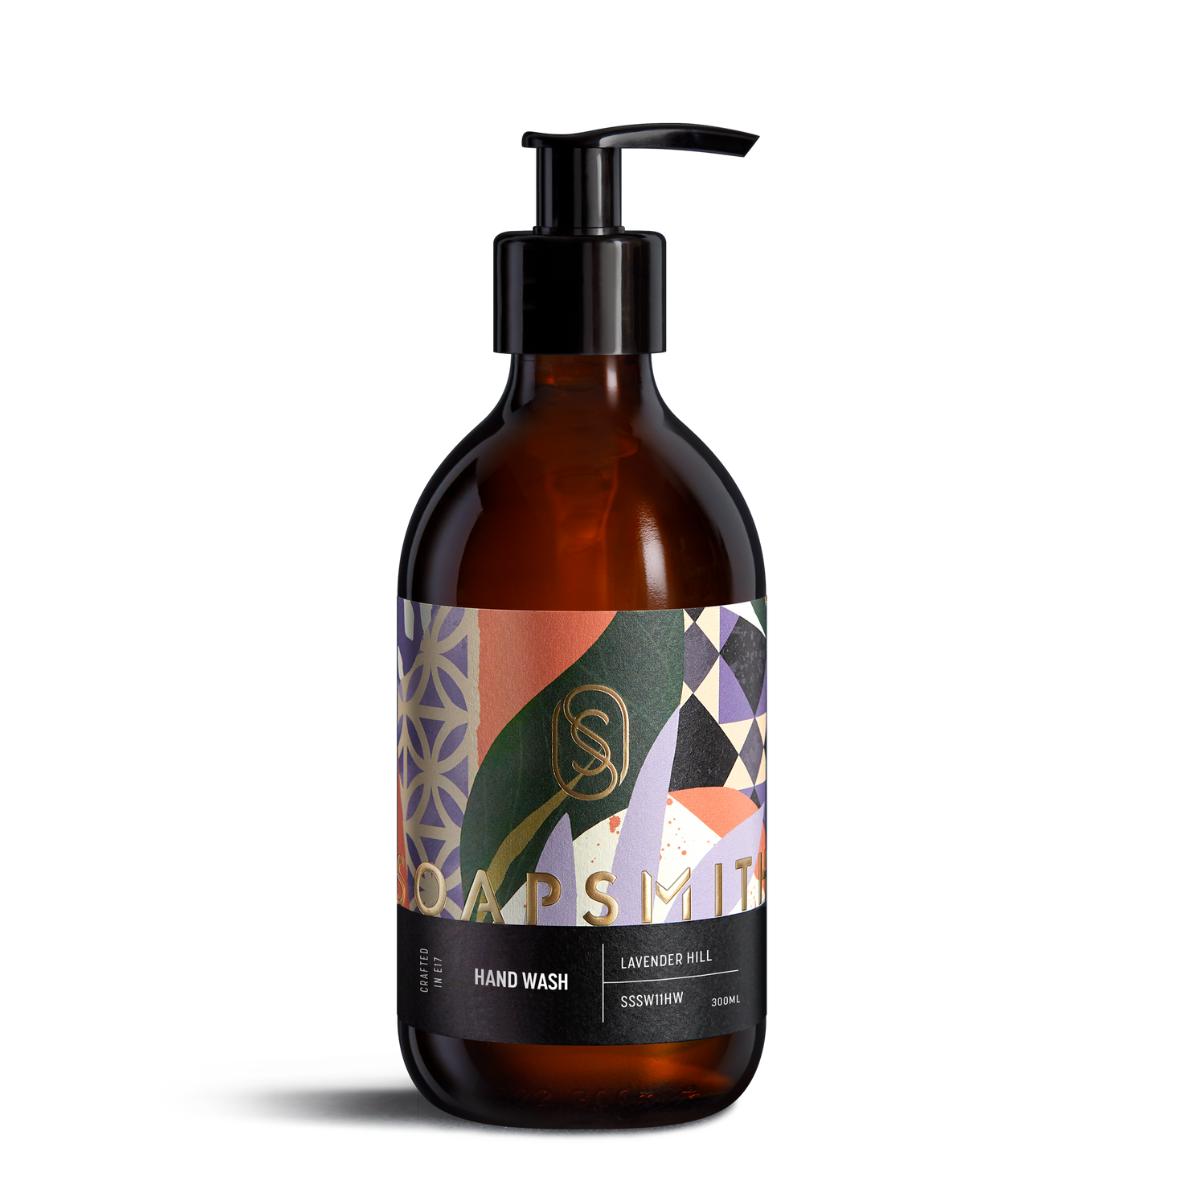 Lavender Hill - Hand Wash von SOAPSMITH (300ml)